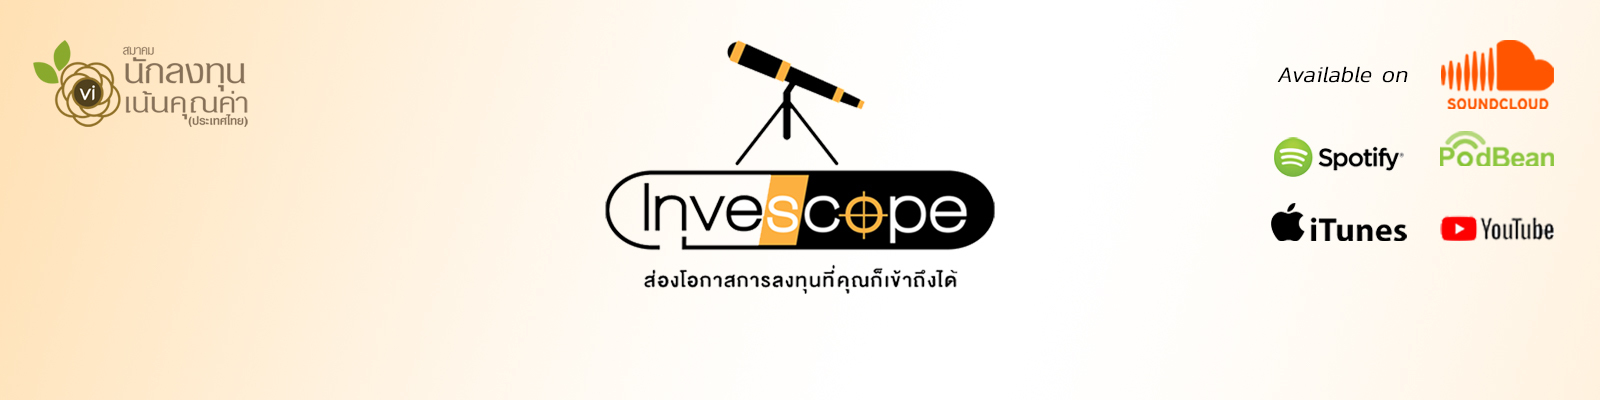 Invescope